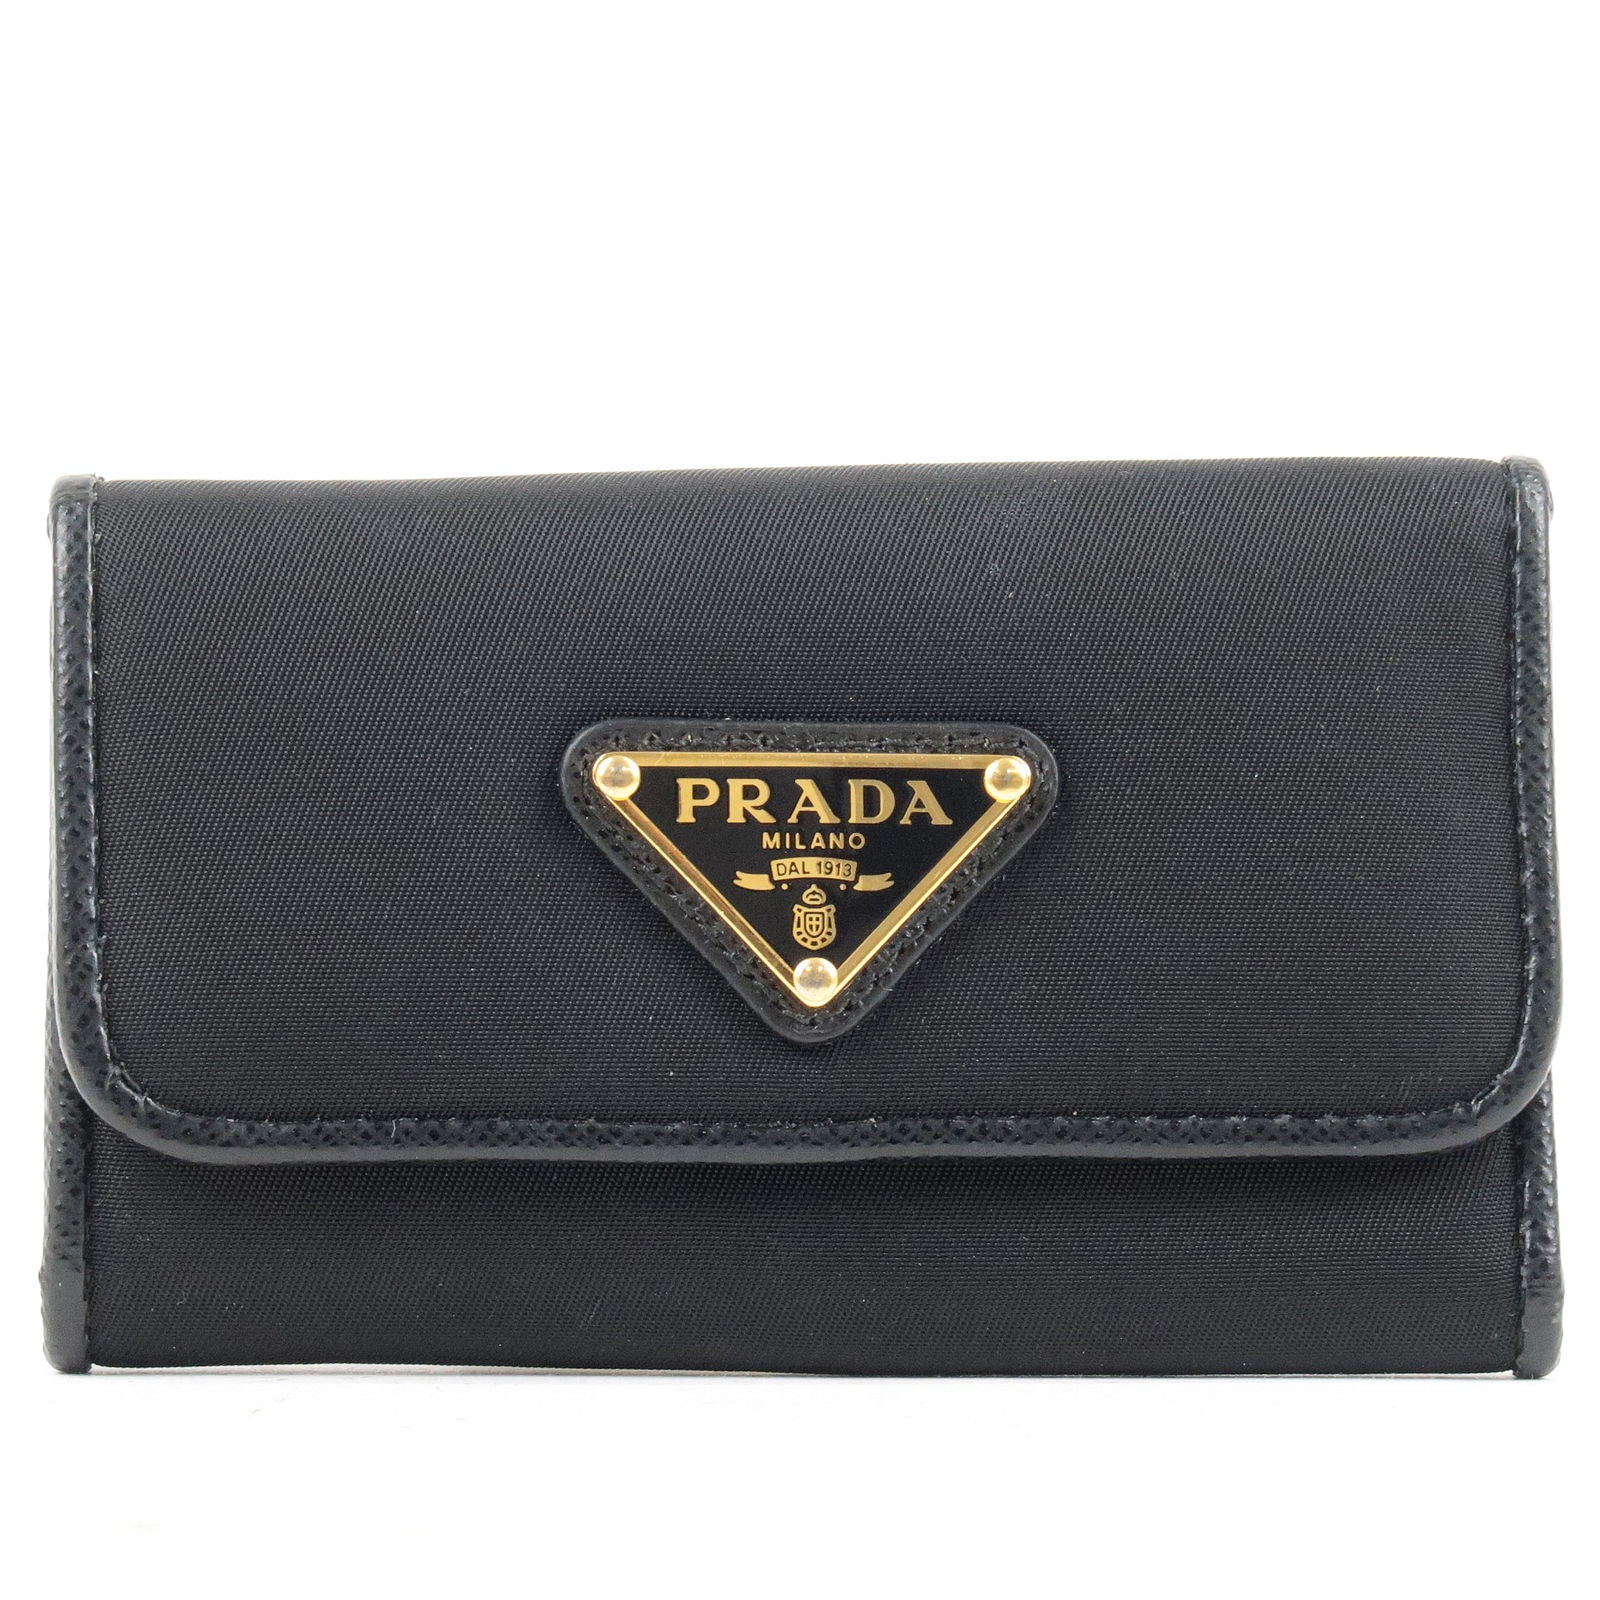 Prada Logo Plate Nylon Tie in Black for Men